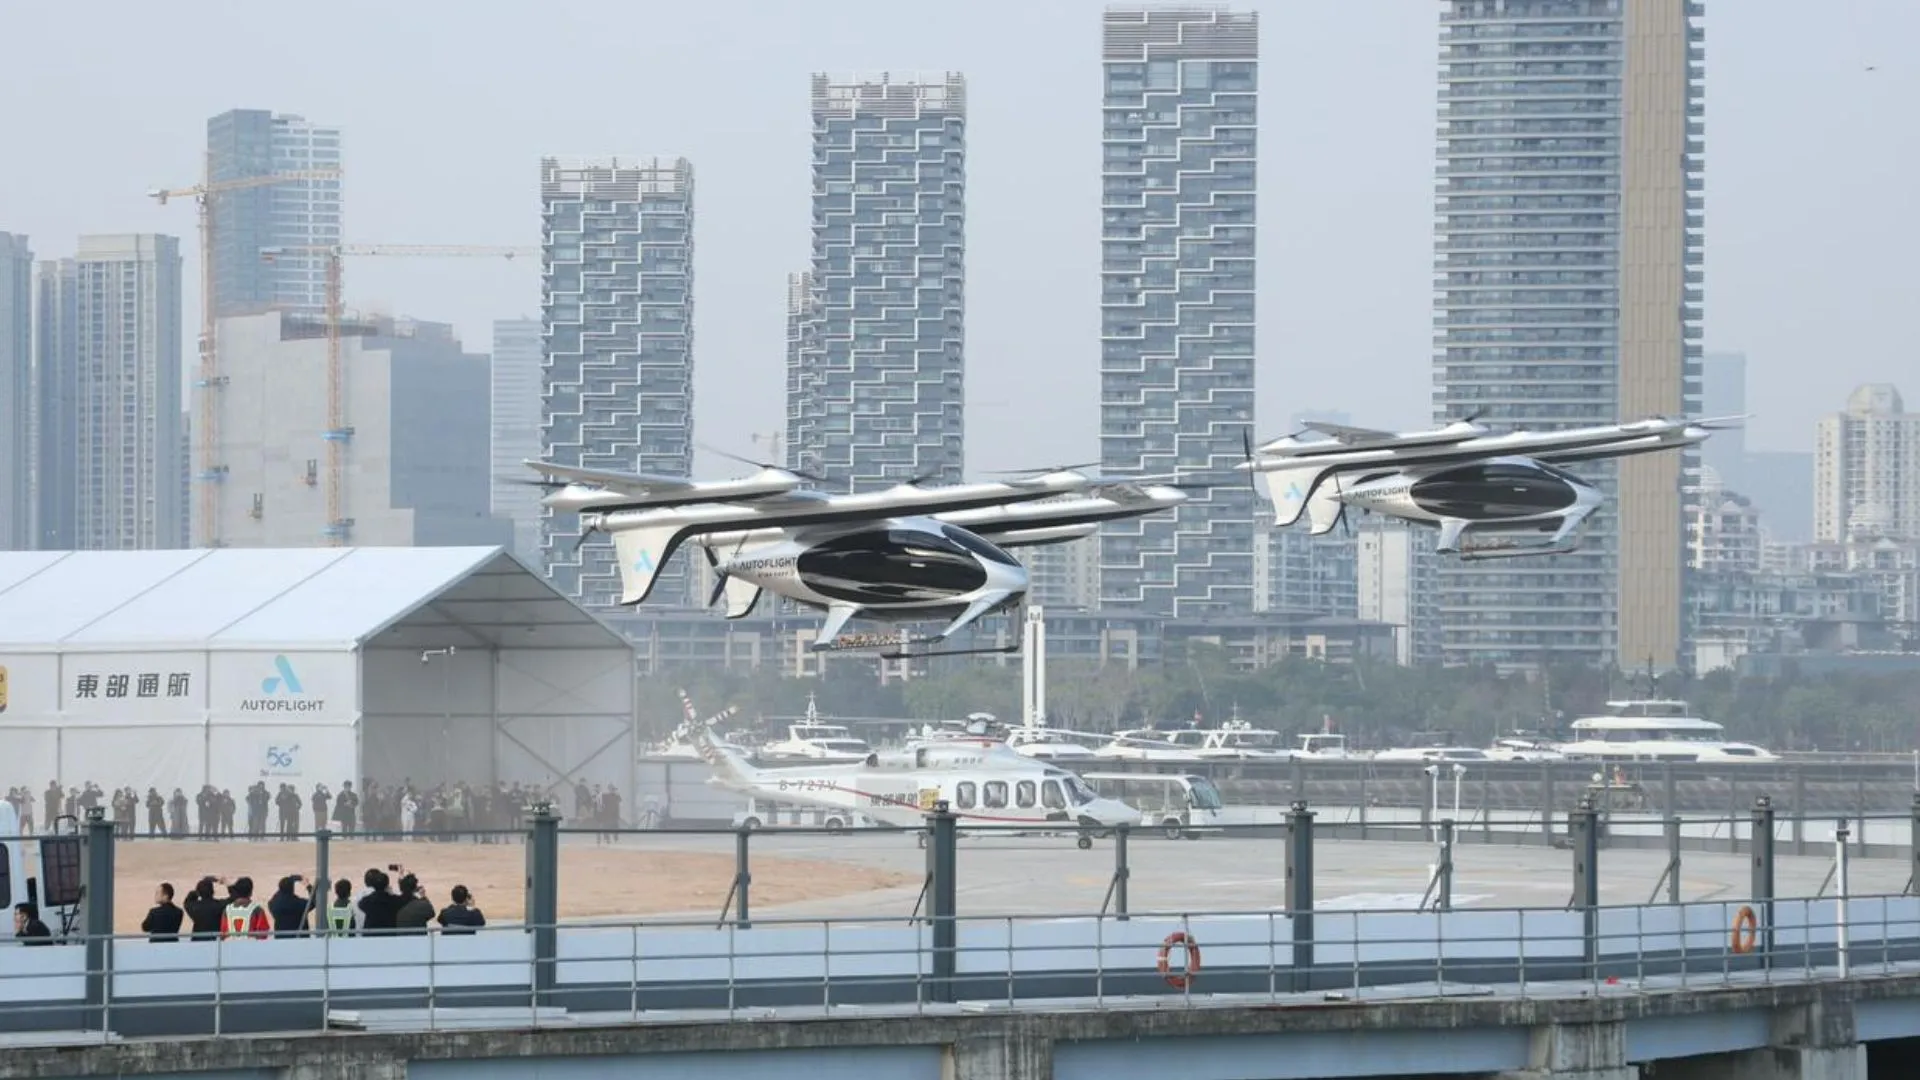 В Китае аэротакси впервые провело междугородний перелет длительностью 20 минут